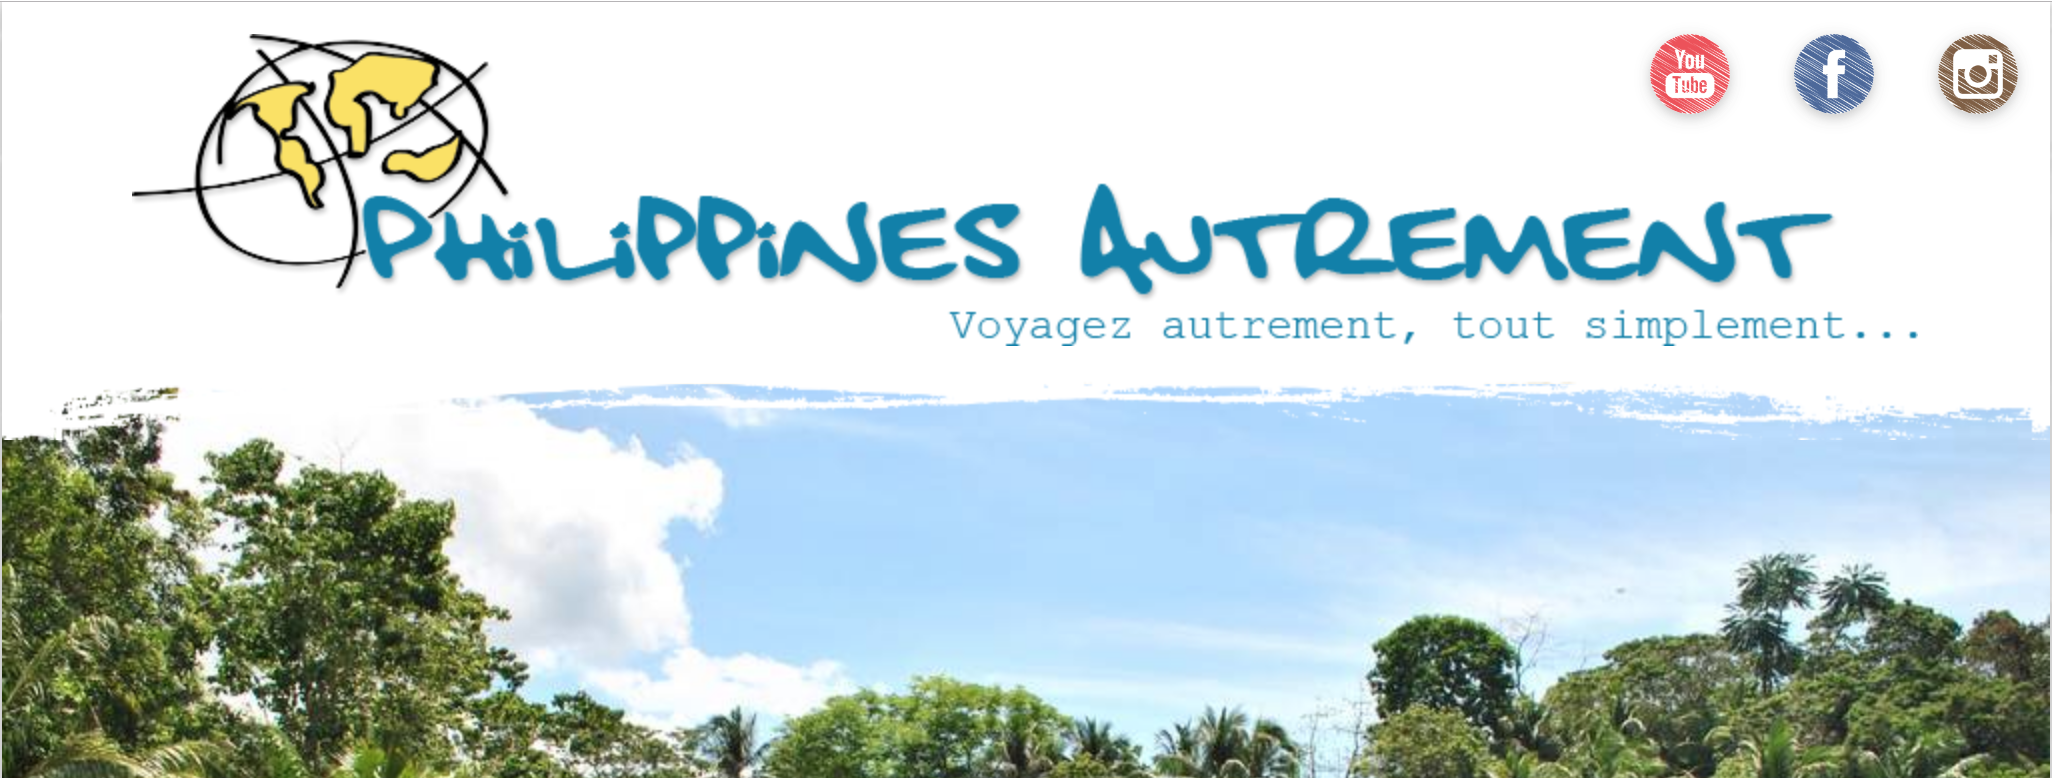 L’agence Philippines Autrement pour voyager autrement